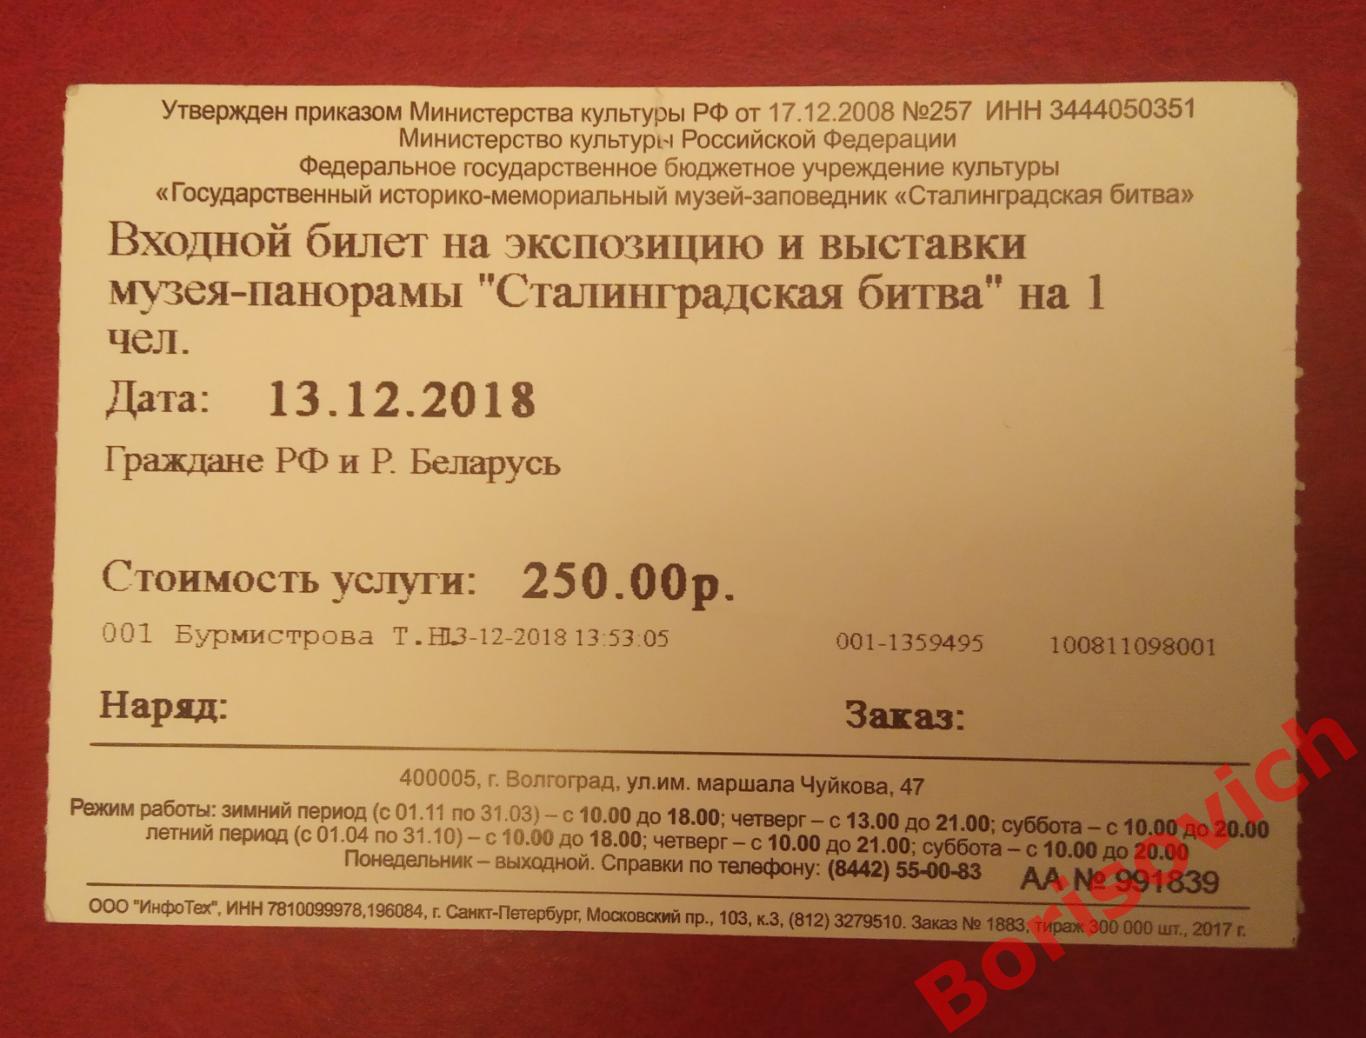 Билет Музей - панорама Сталинградская битва Волгоград 2018